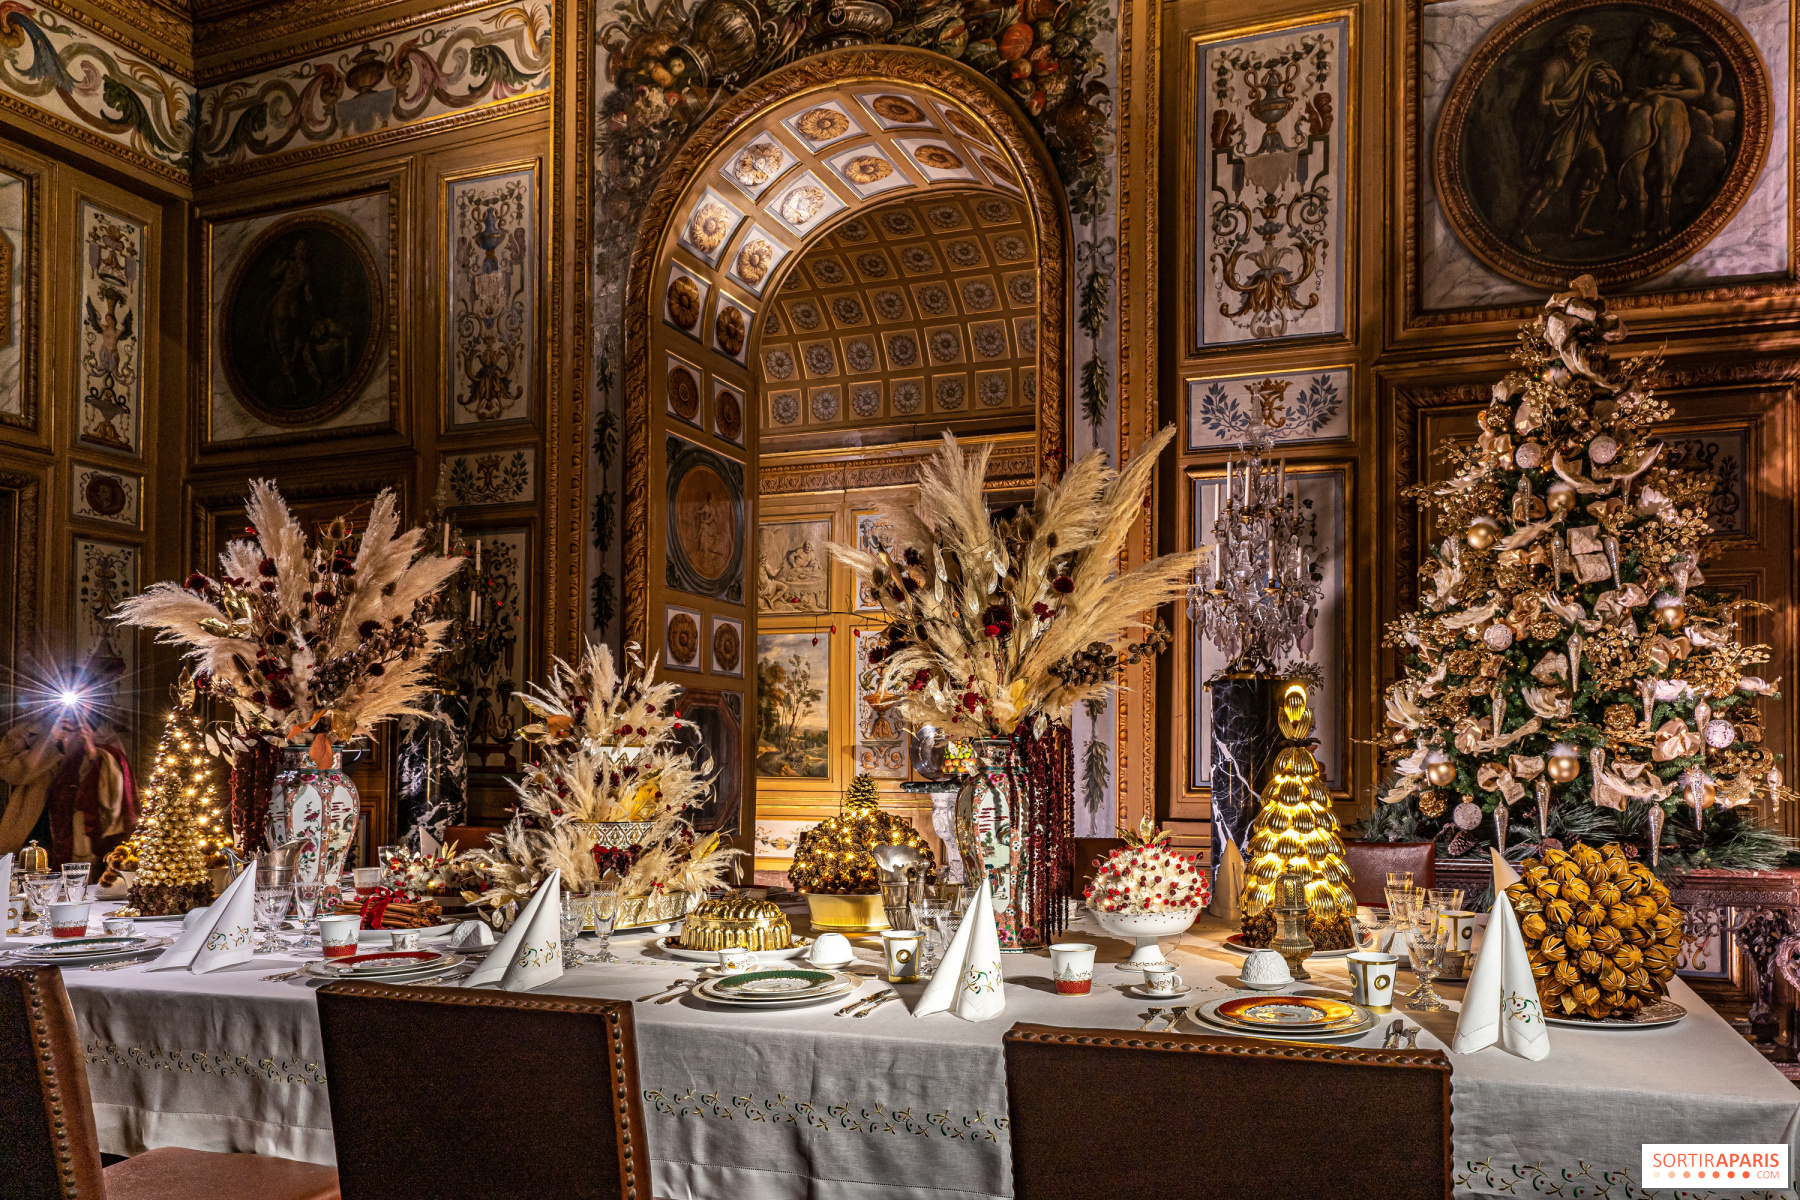 Les meilleures idées de décoration table de Noël - Le Parisien